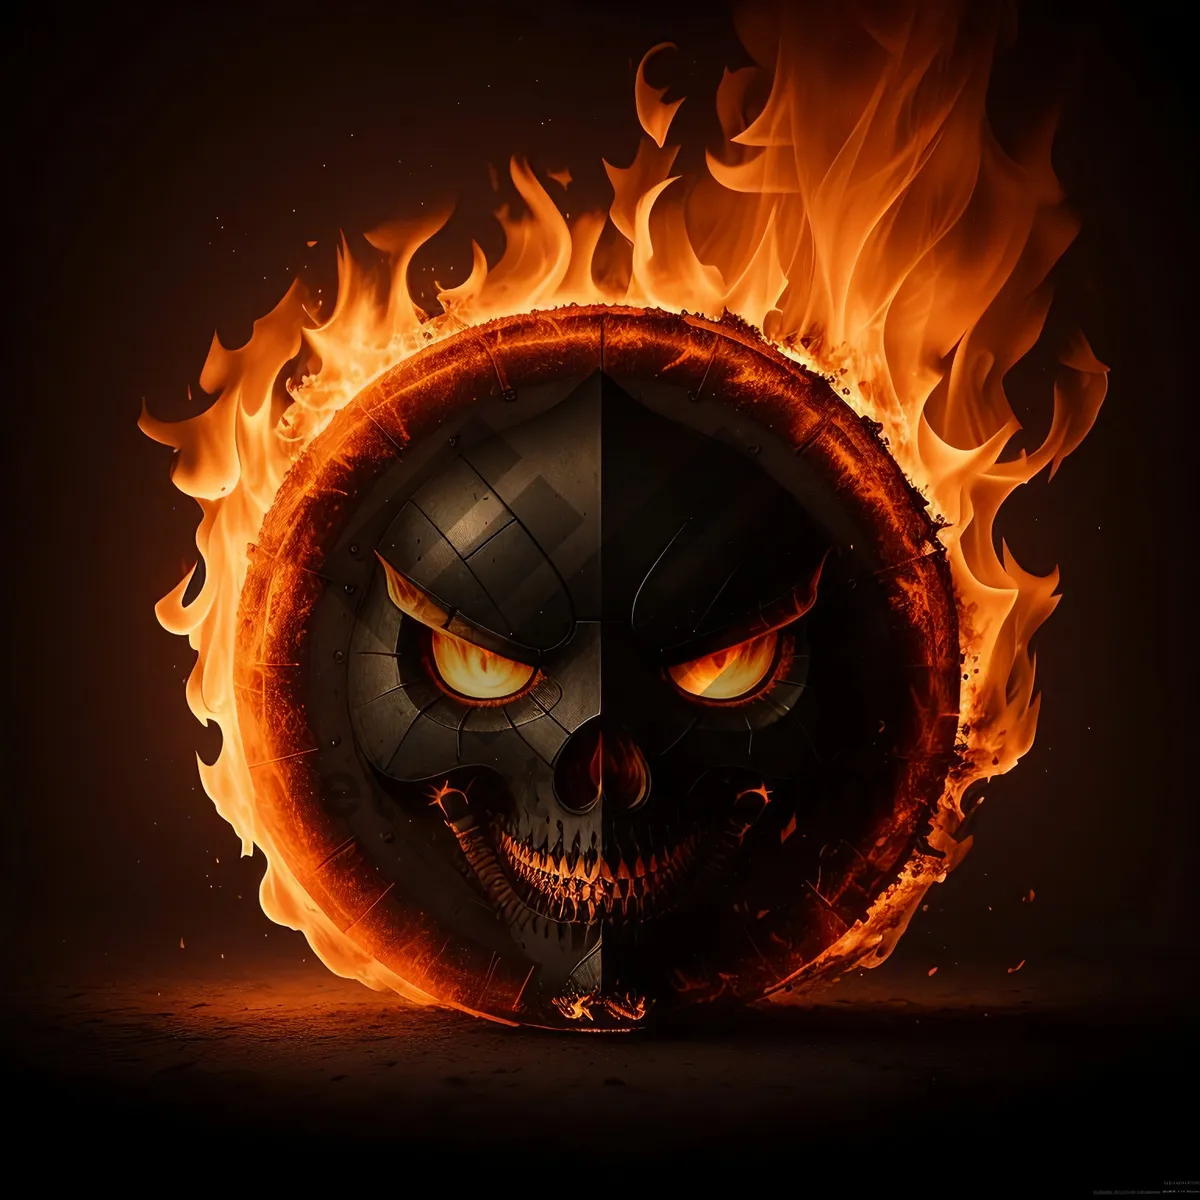 Picture of Spooky Blaze: Jack-O'-Lantern Fire